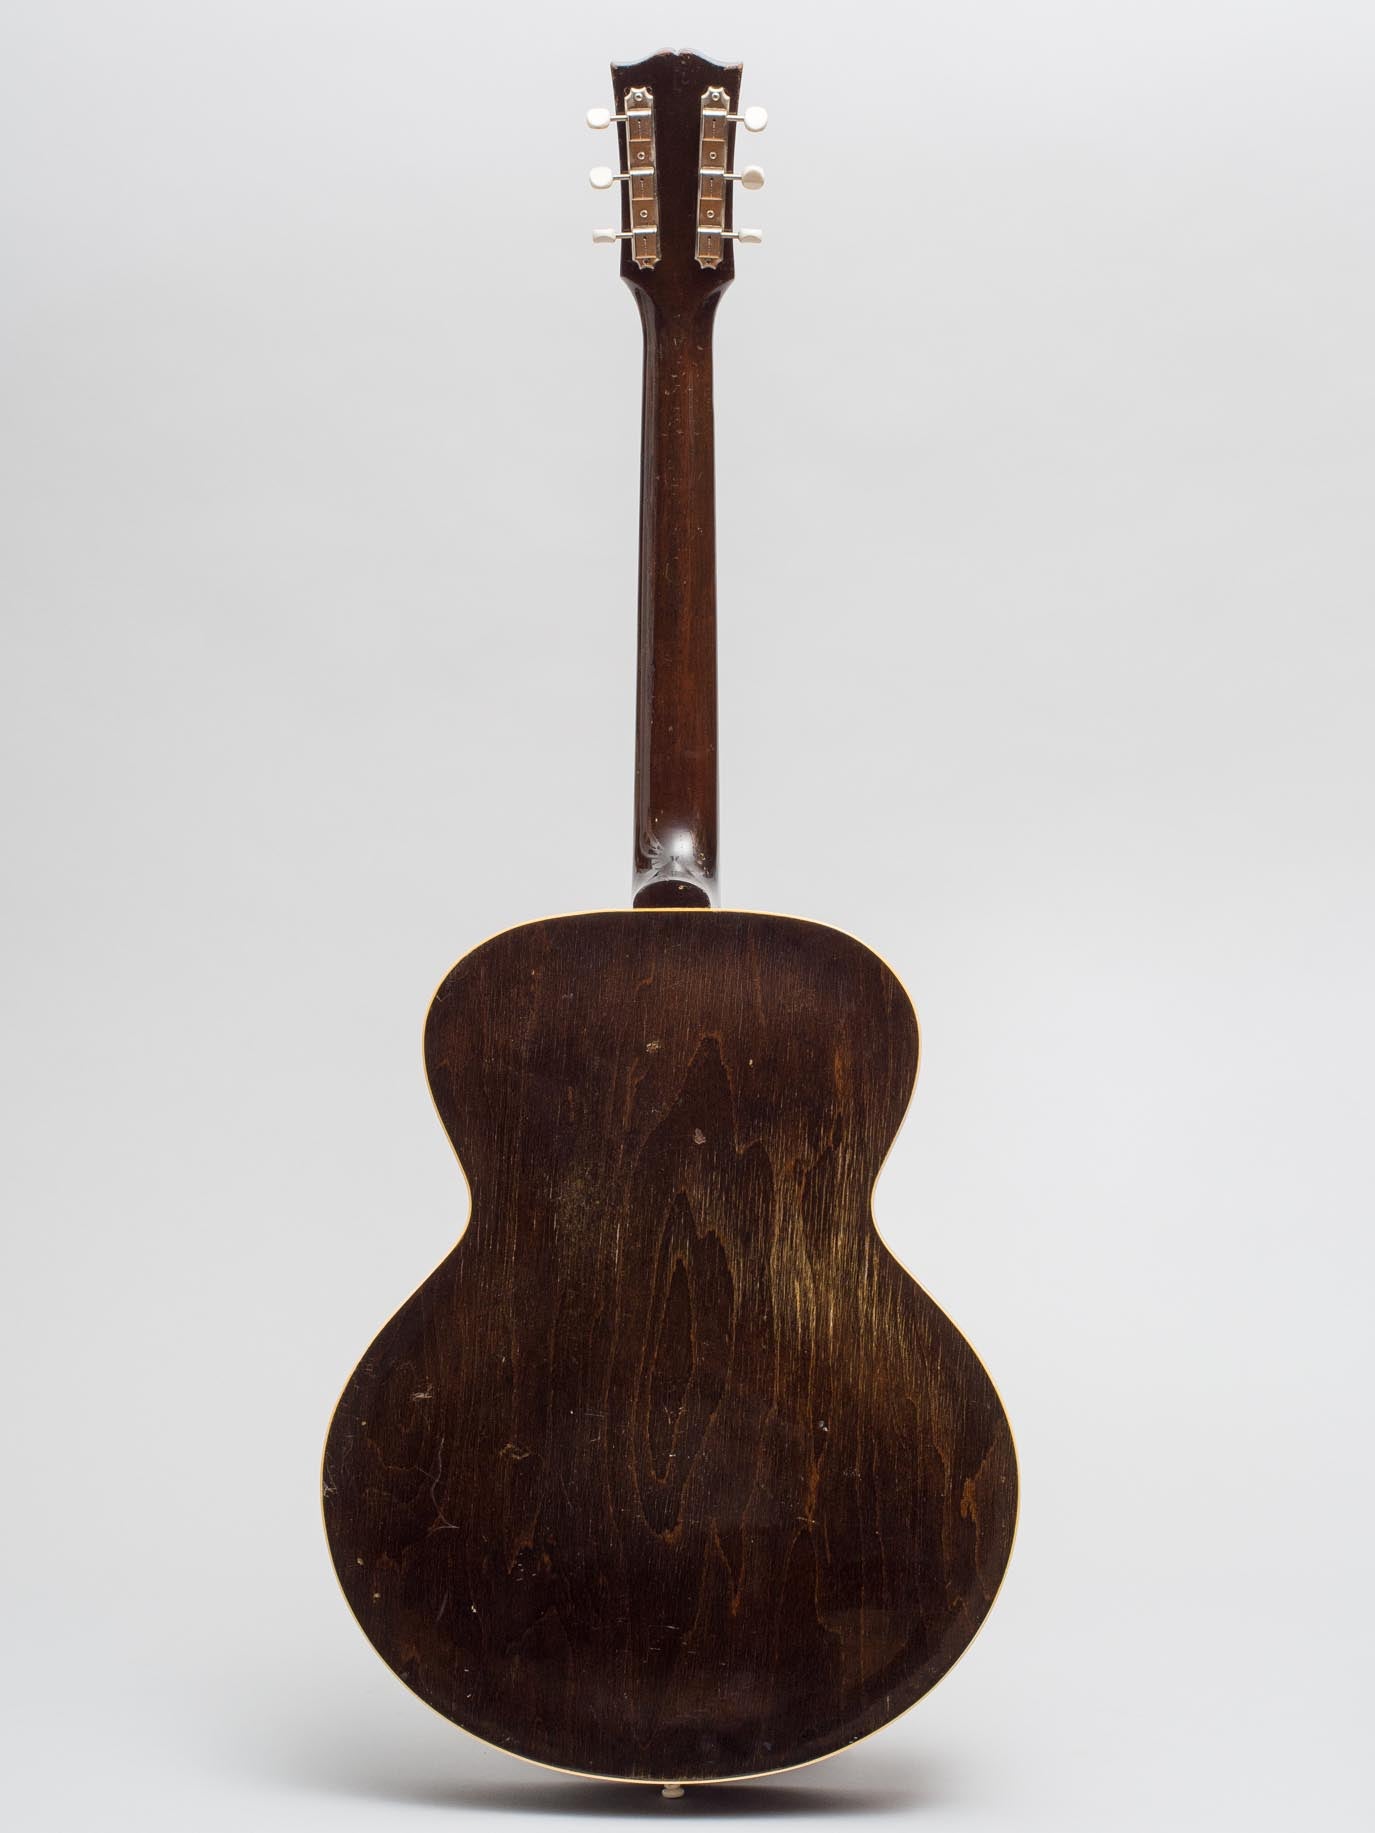 1950 Gibson ES-125